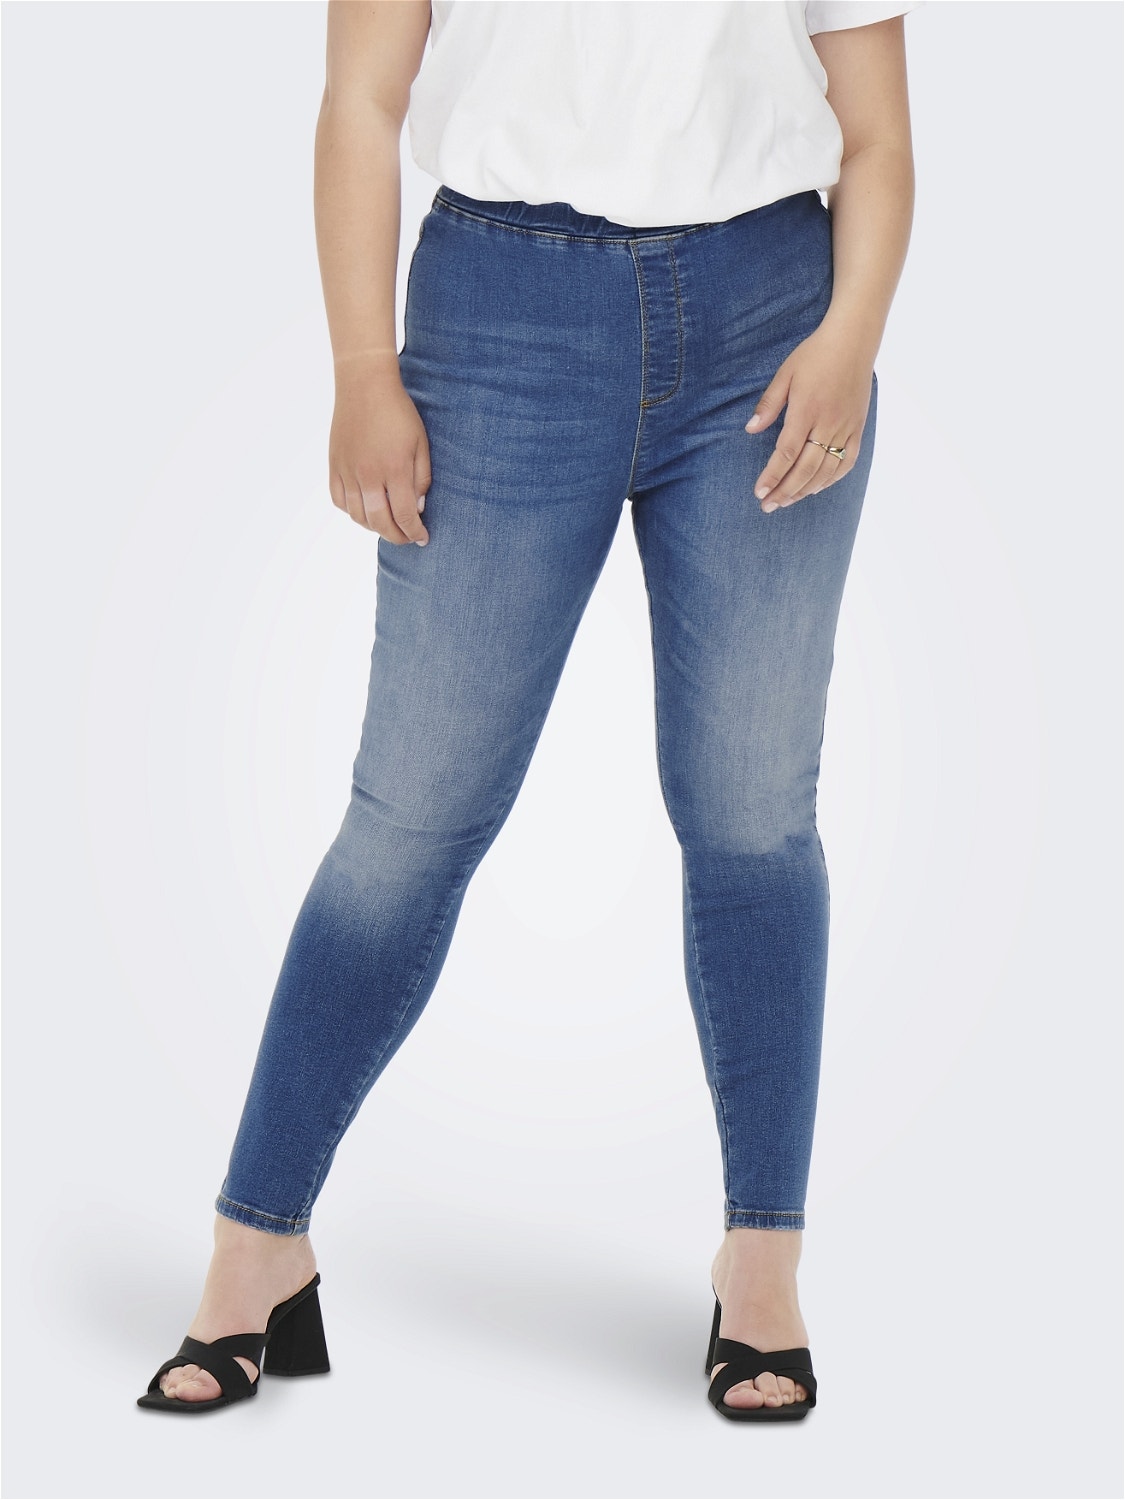 ONLY Jegging Fit High waist Curve Jeans -Light Blue Denim - 15261750